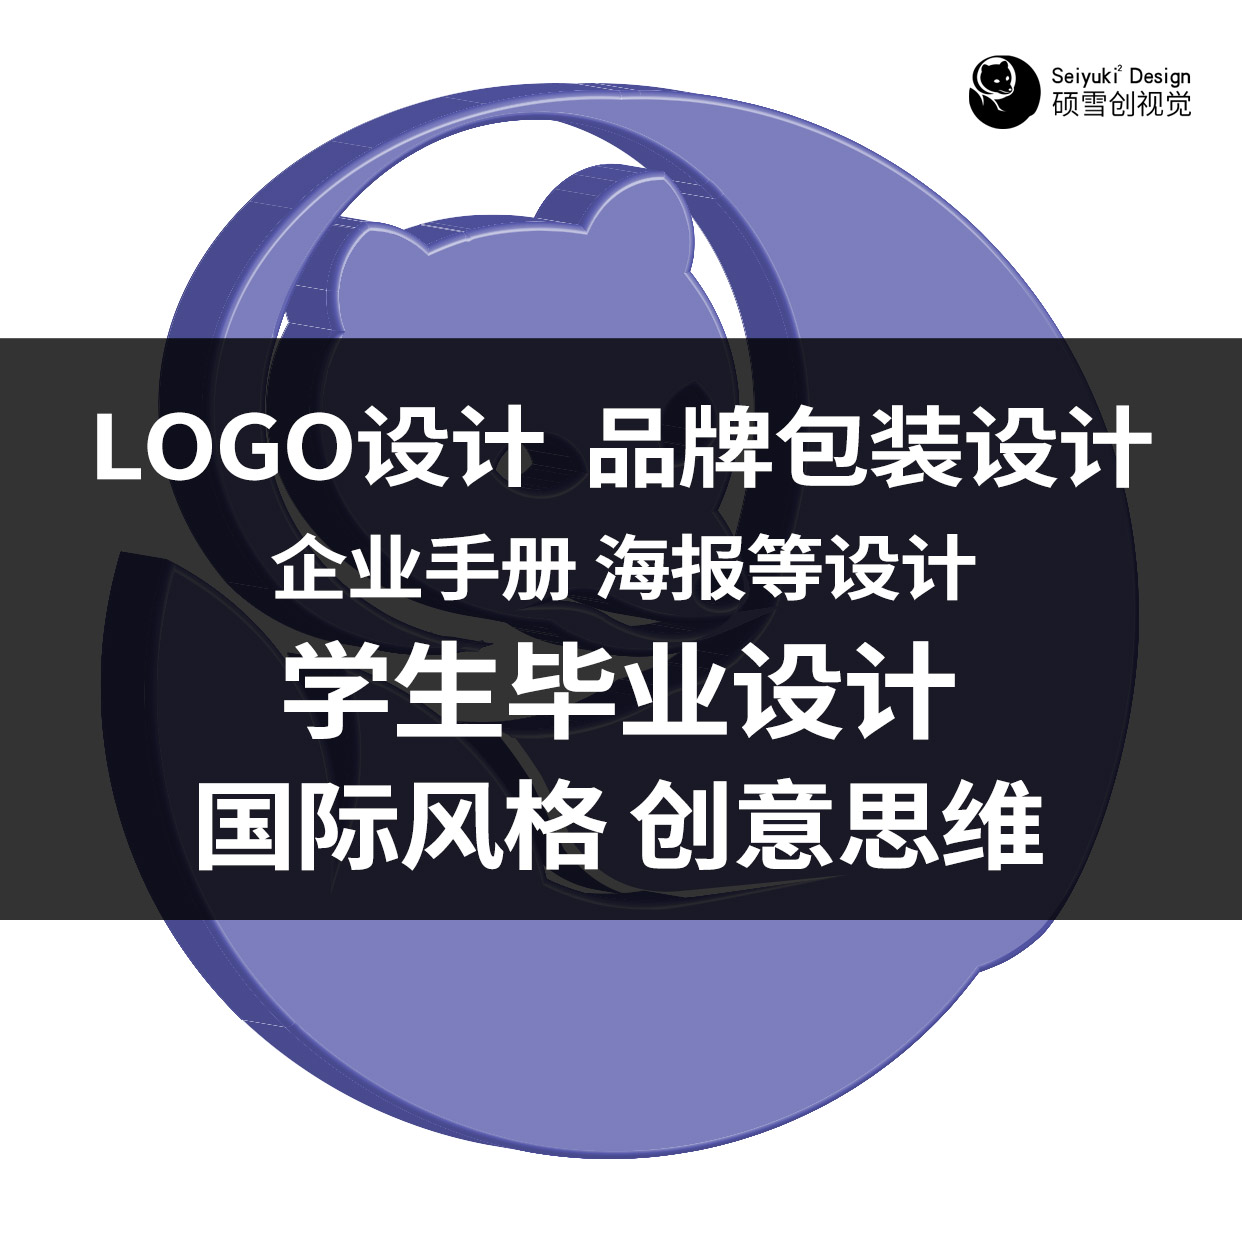 平面设计：原创LOGO设计、高端LOGO设计、卡通LOGO设